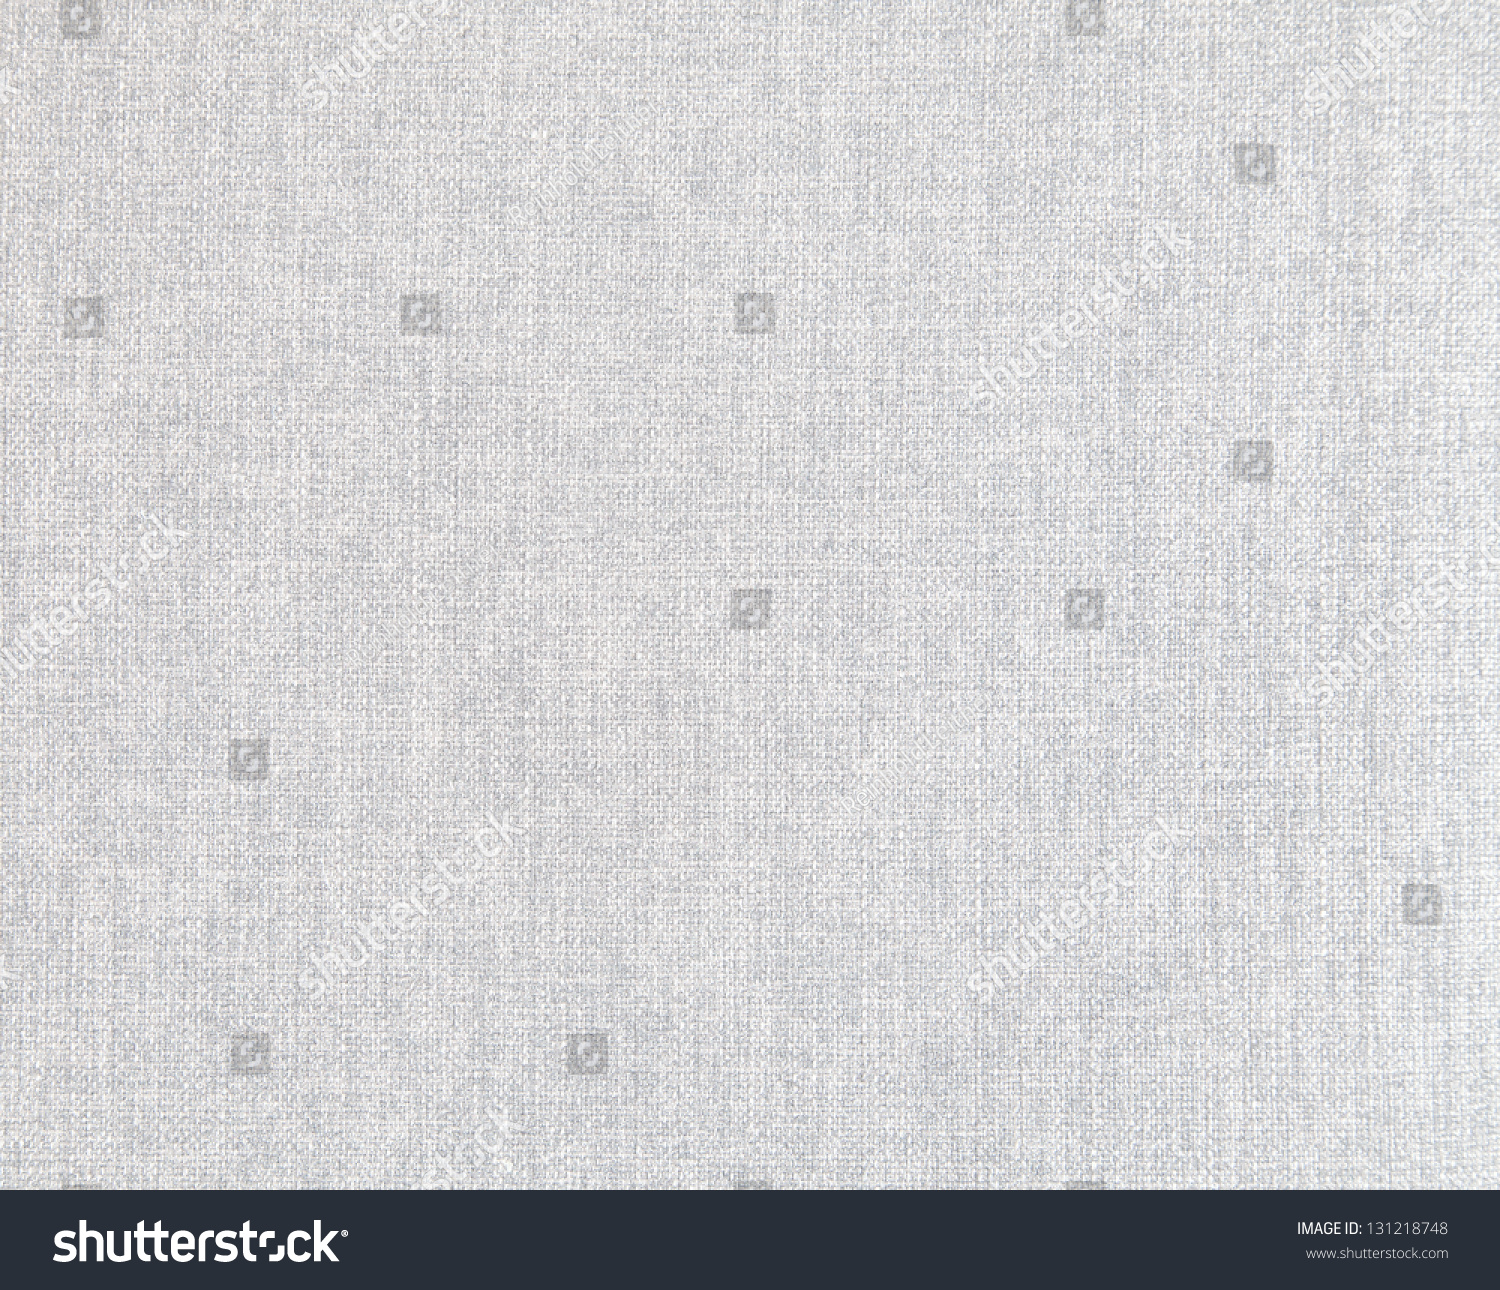 White Linen Background Stock Photo 131218748 - Shutterstock